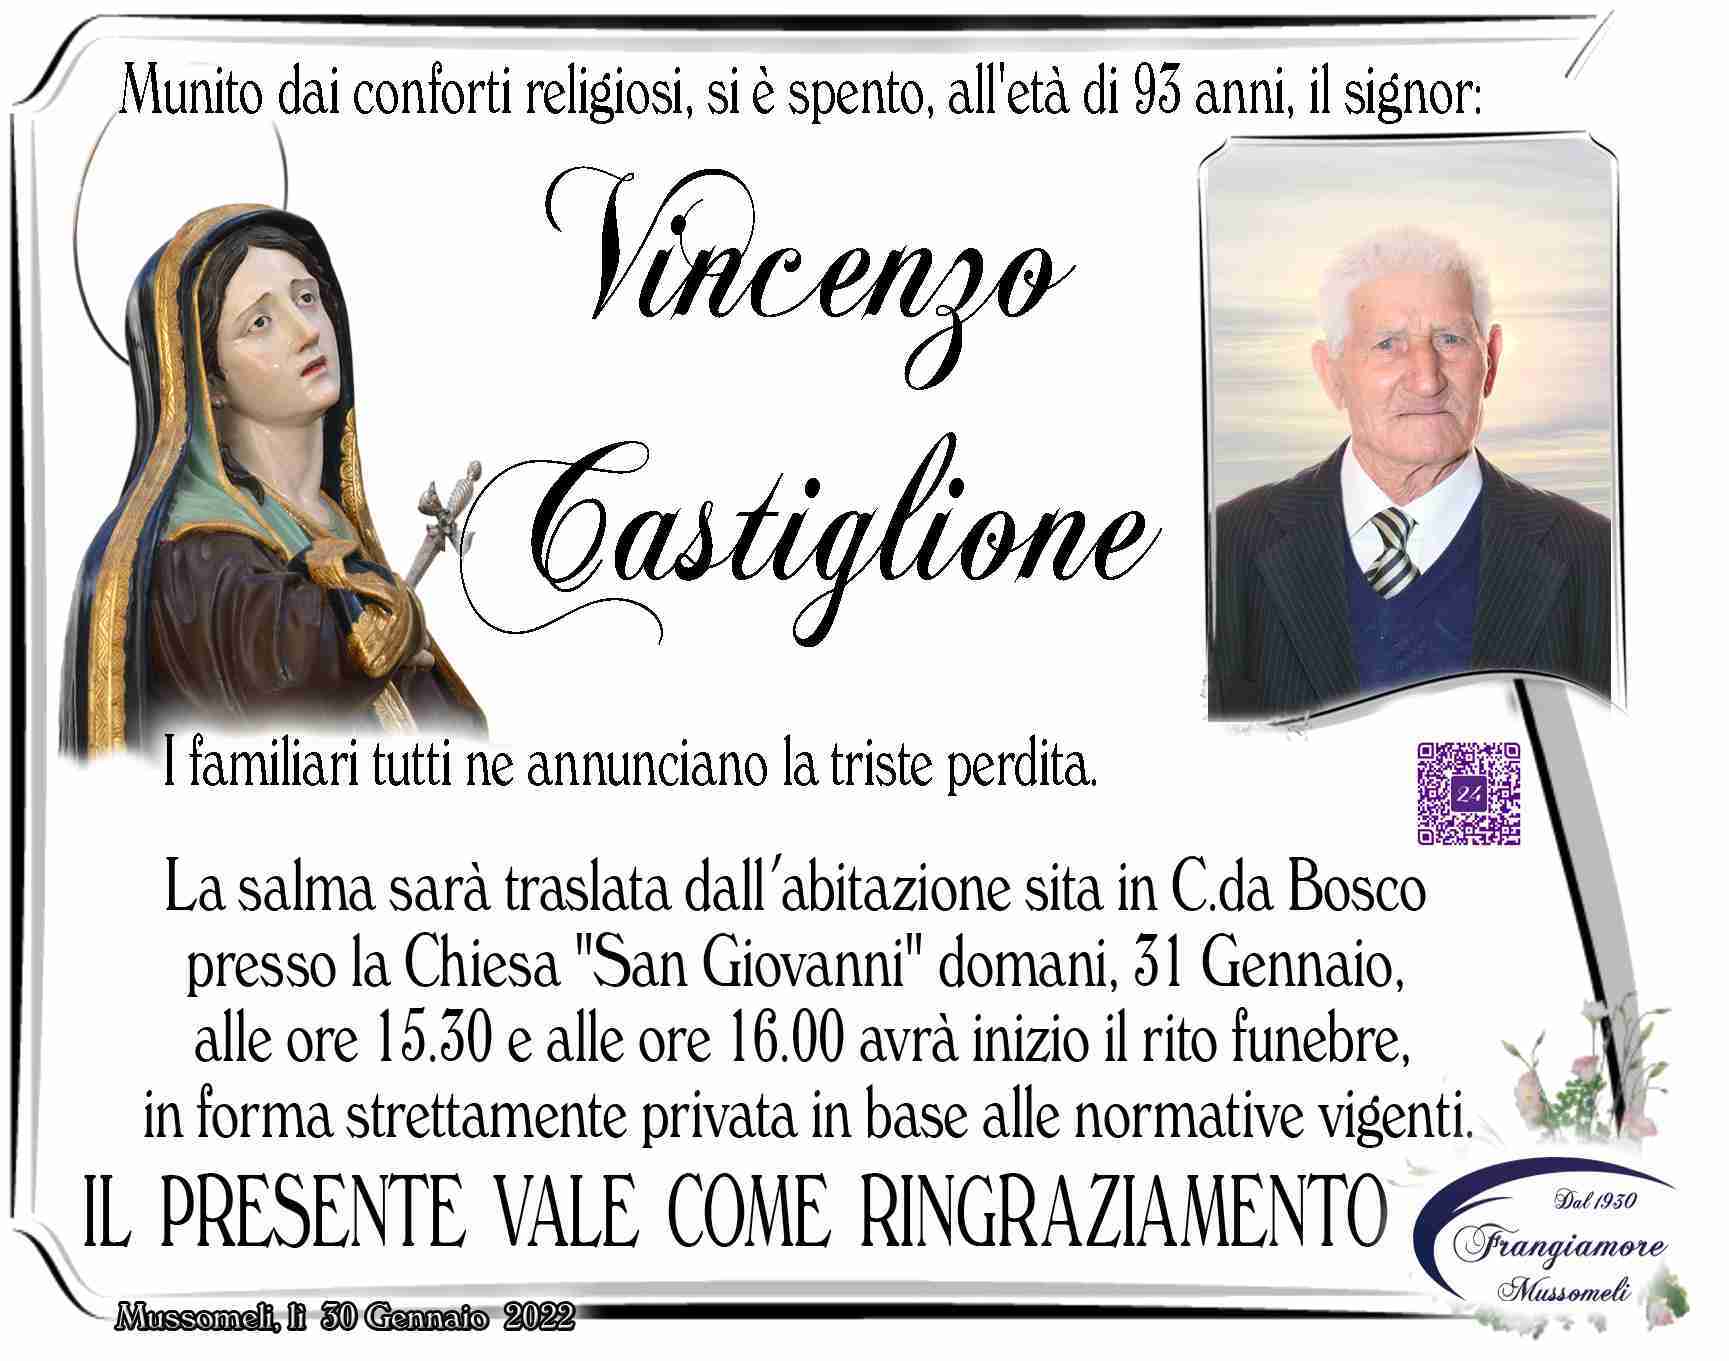 Vincenzo Castiglione